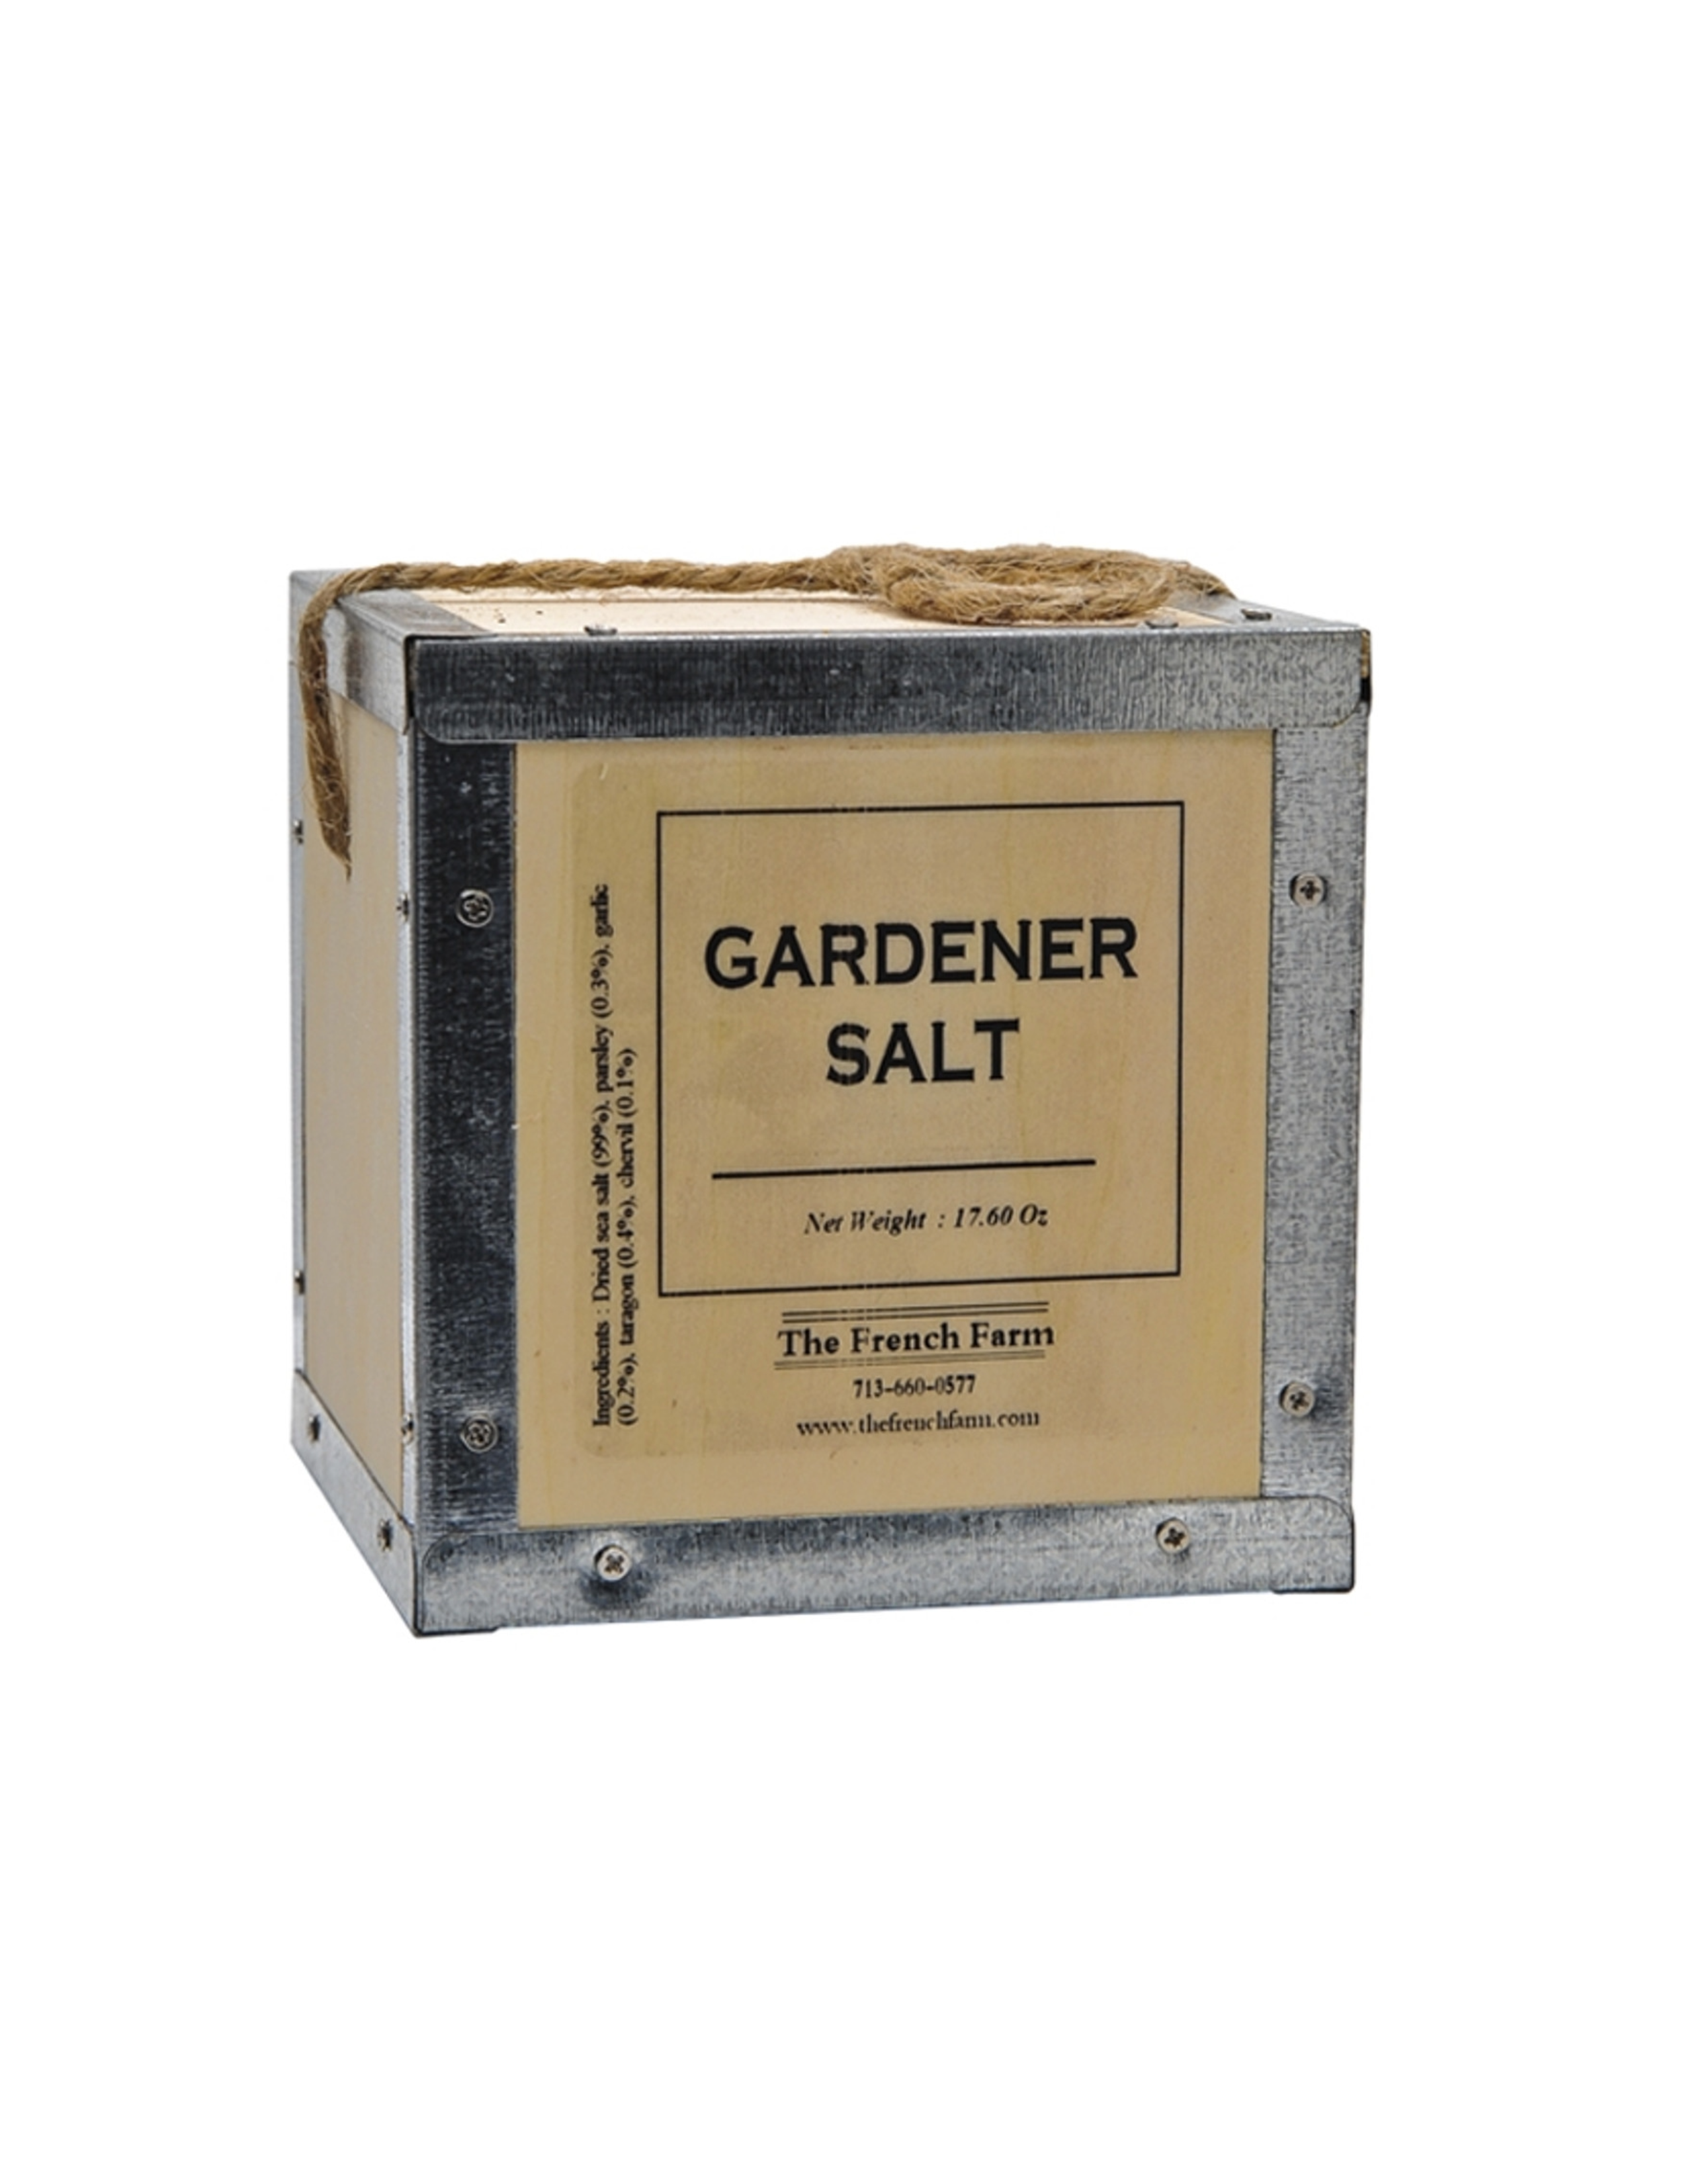 The Gardener Salt Box